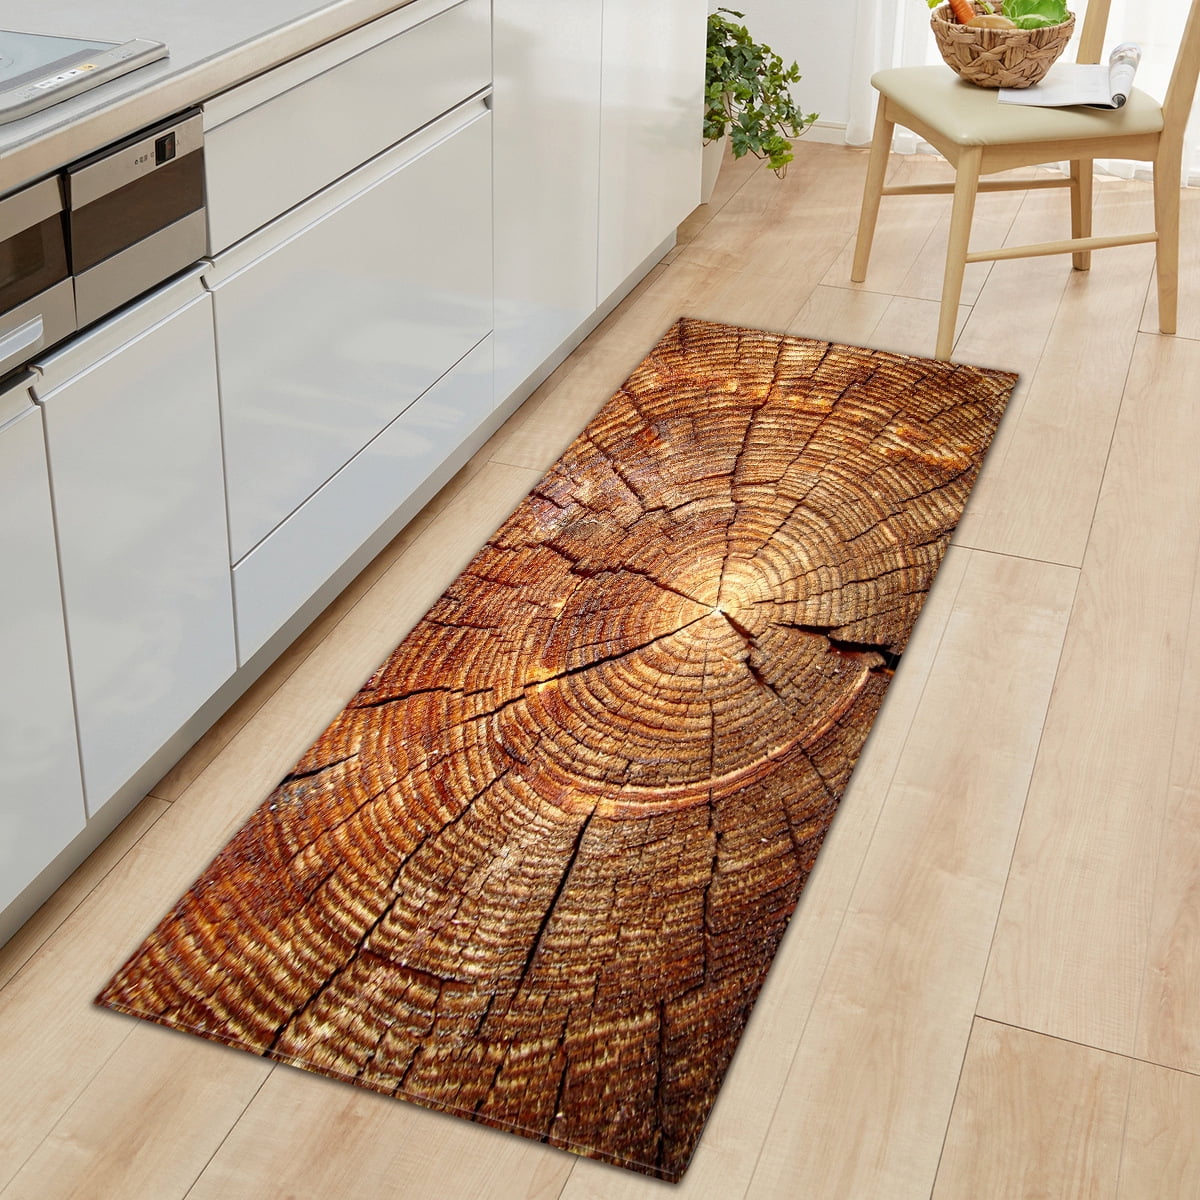 Kitchen Floor Carpet Wooden Plank Pattern Floor Mat Non Slip Area Rug Doormat Living Room Bedroom Entrance Decoration Walmart Canada